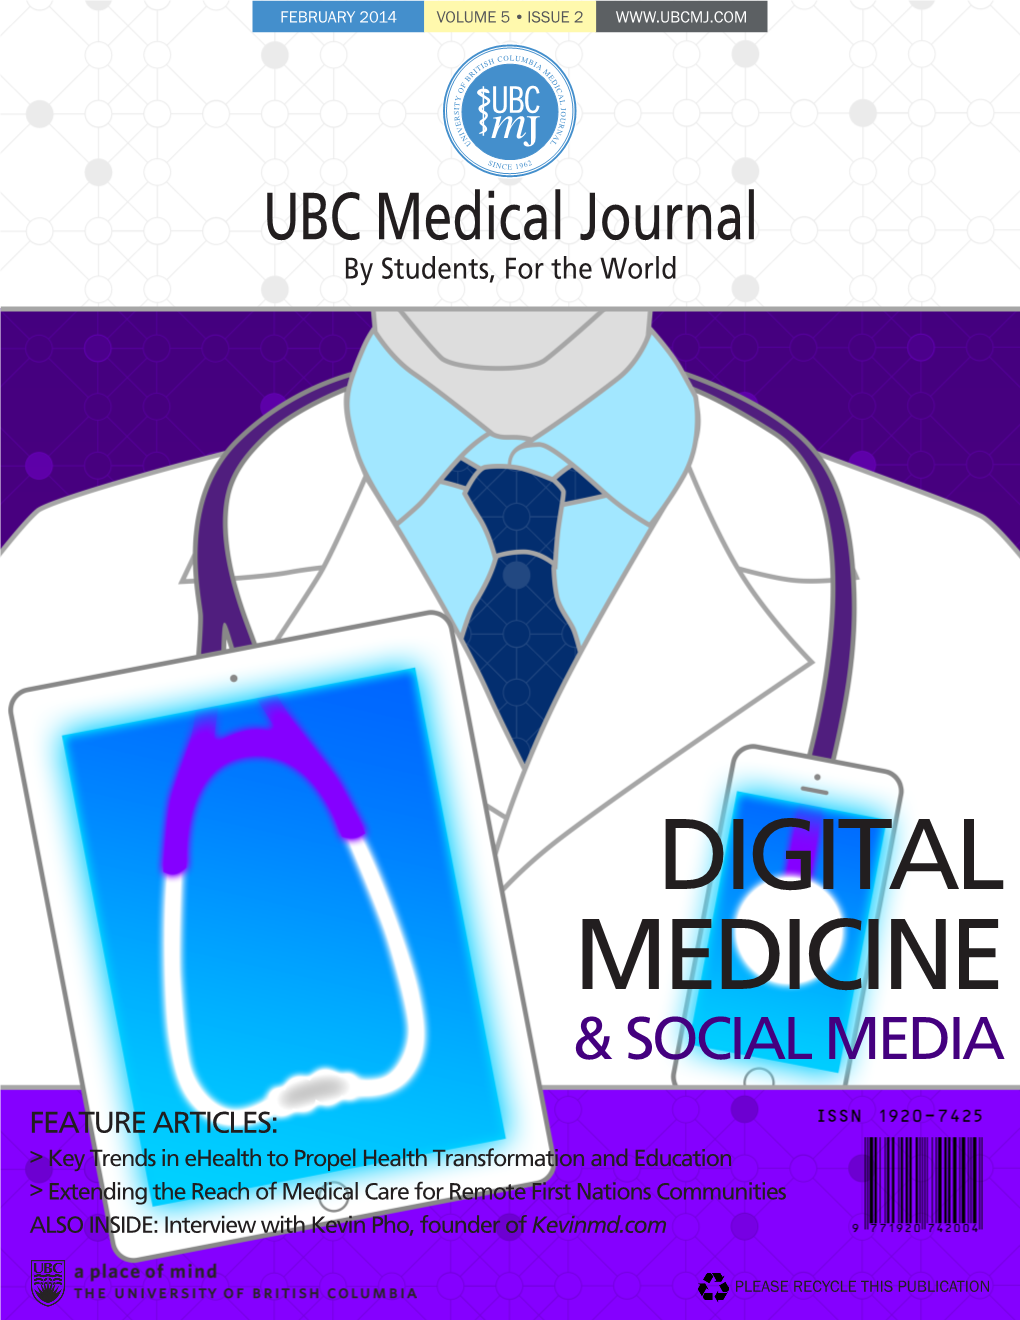 Digital Medicine & Social Media